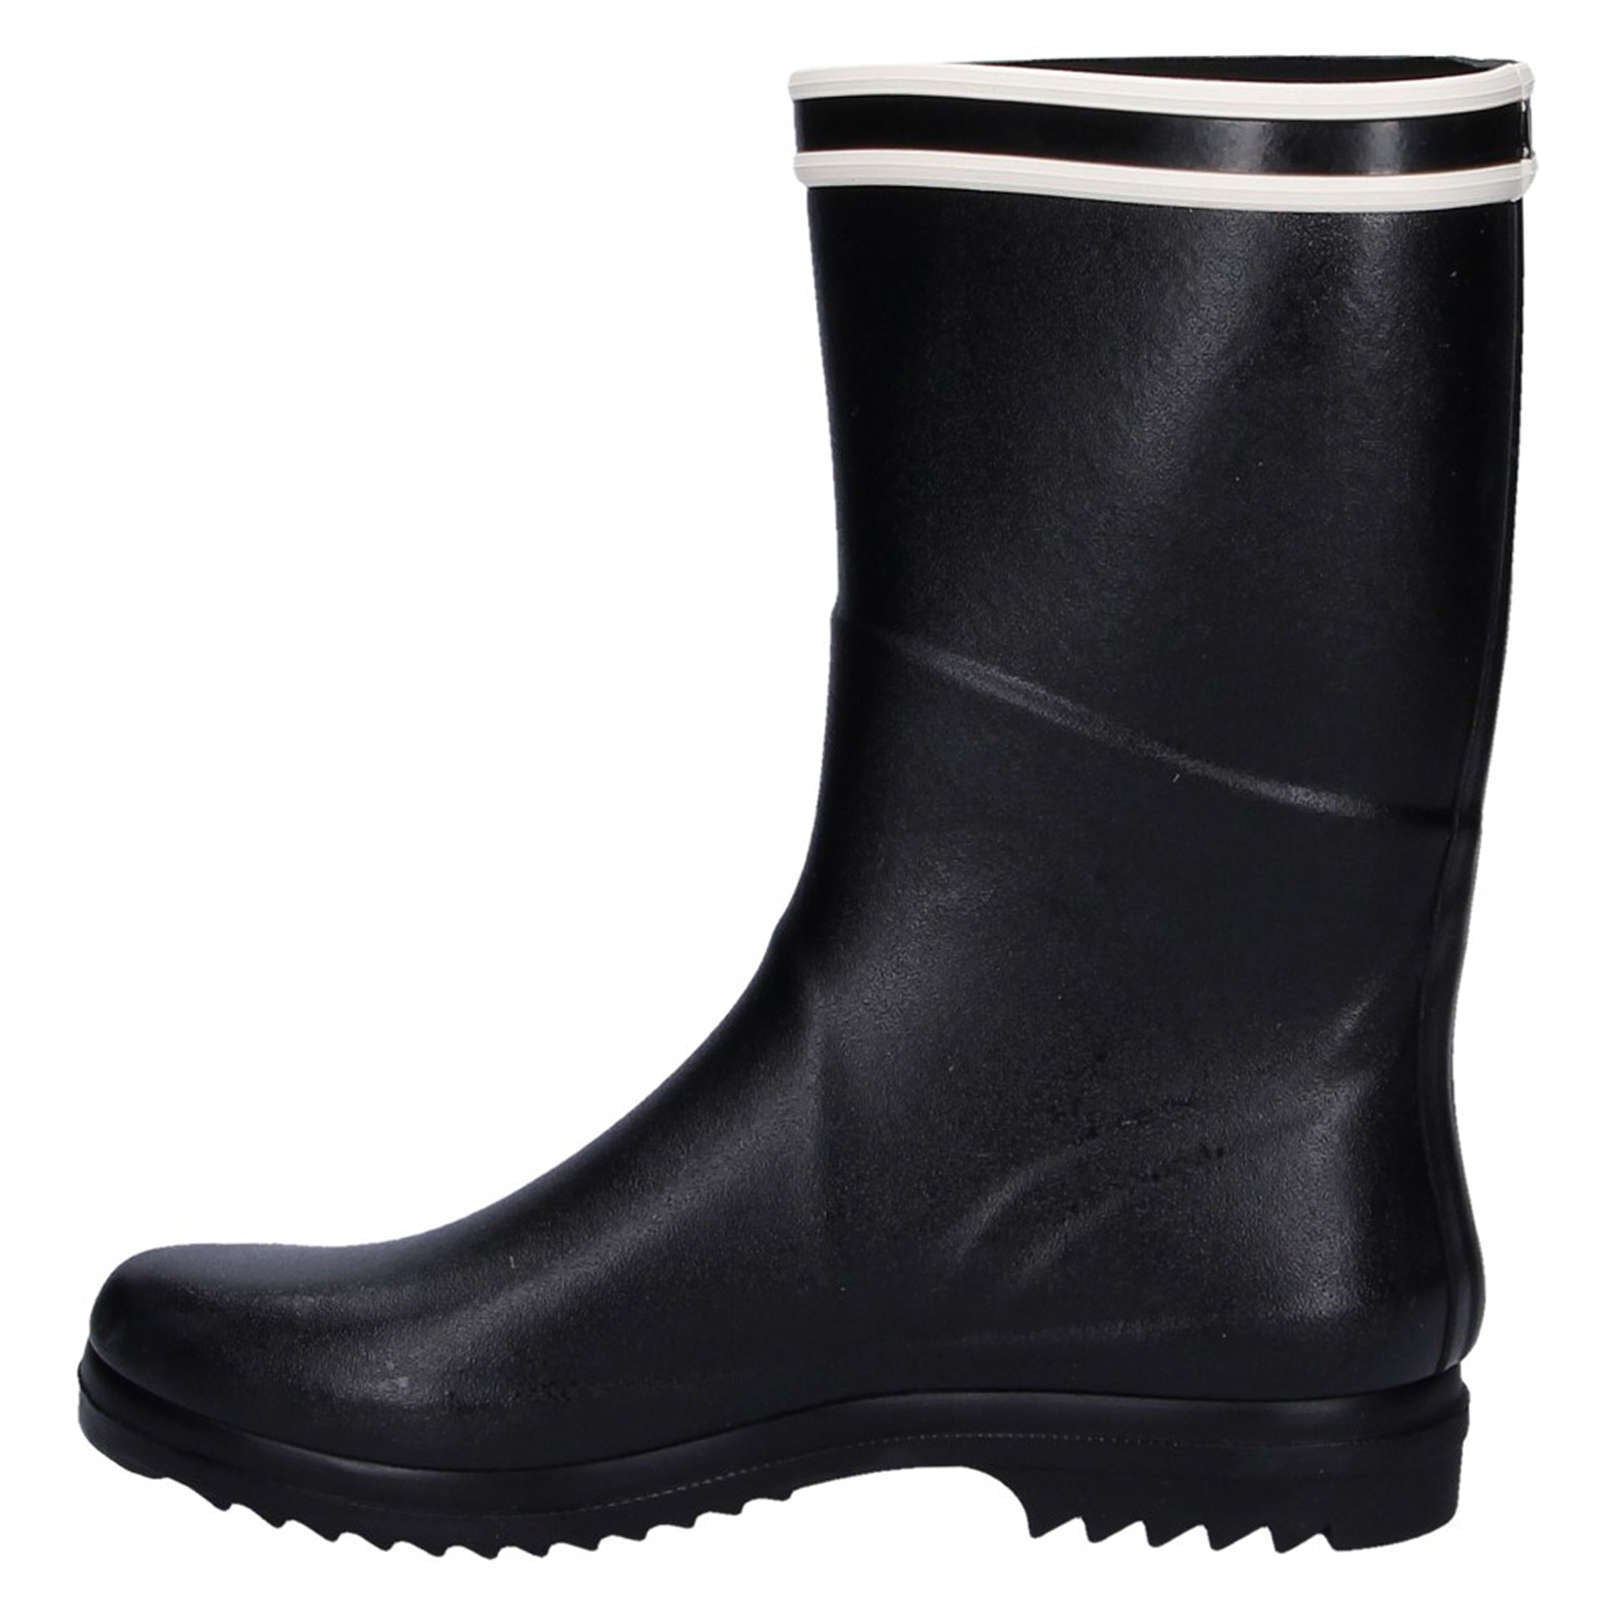 Aigle Chanteboot Stripes Rubber Women's Mid-High Wellington Boots#color_black